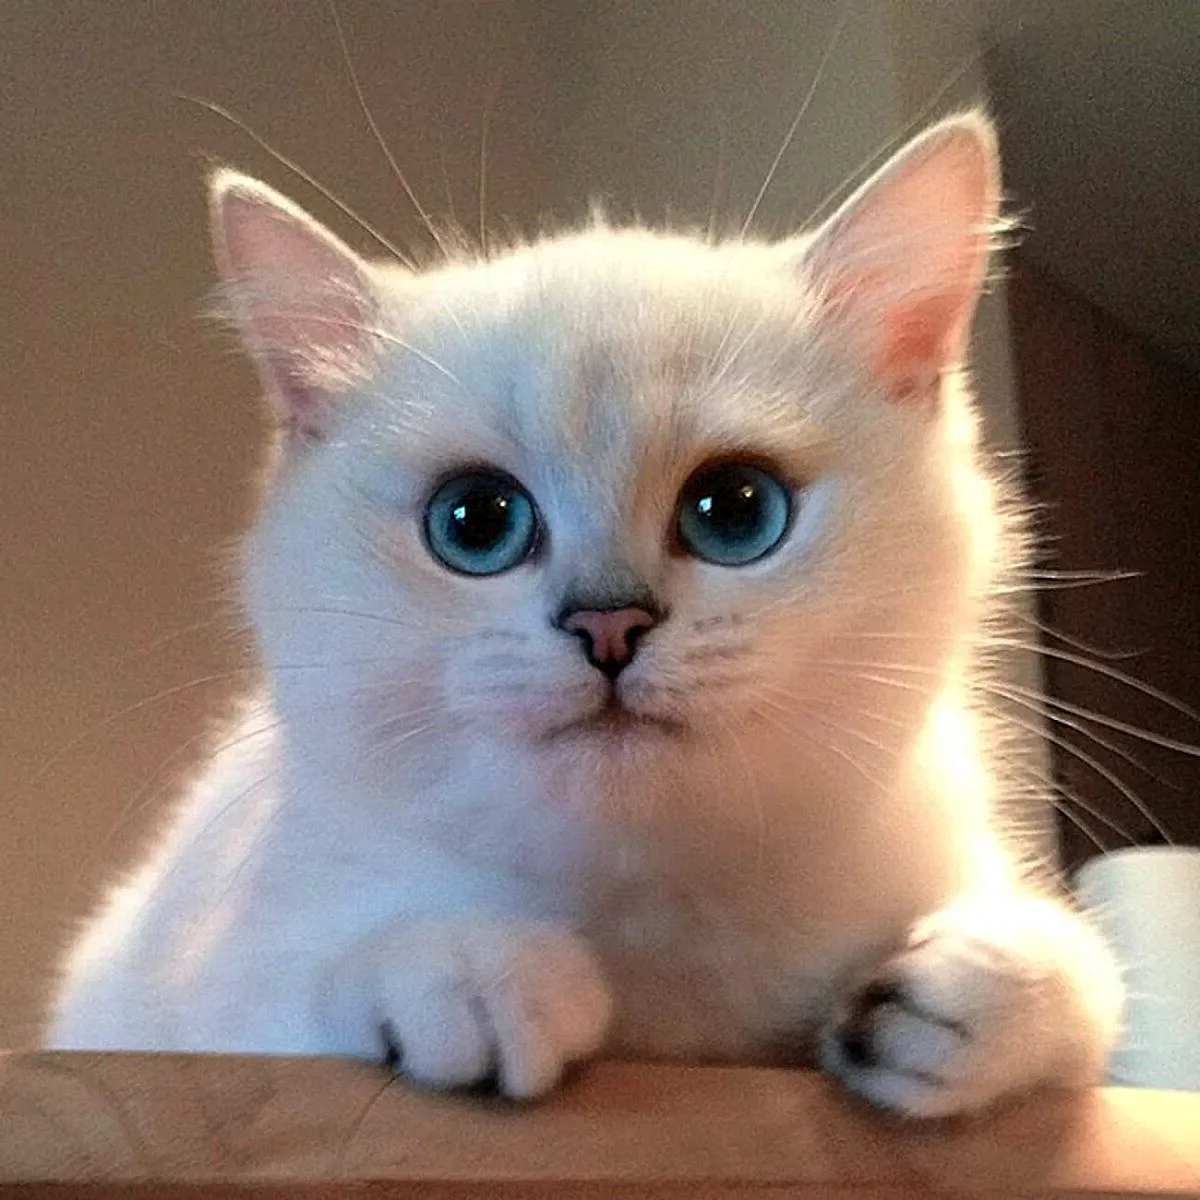 Голубоглазый кот Коби